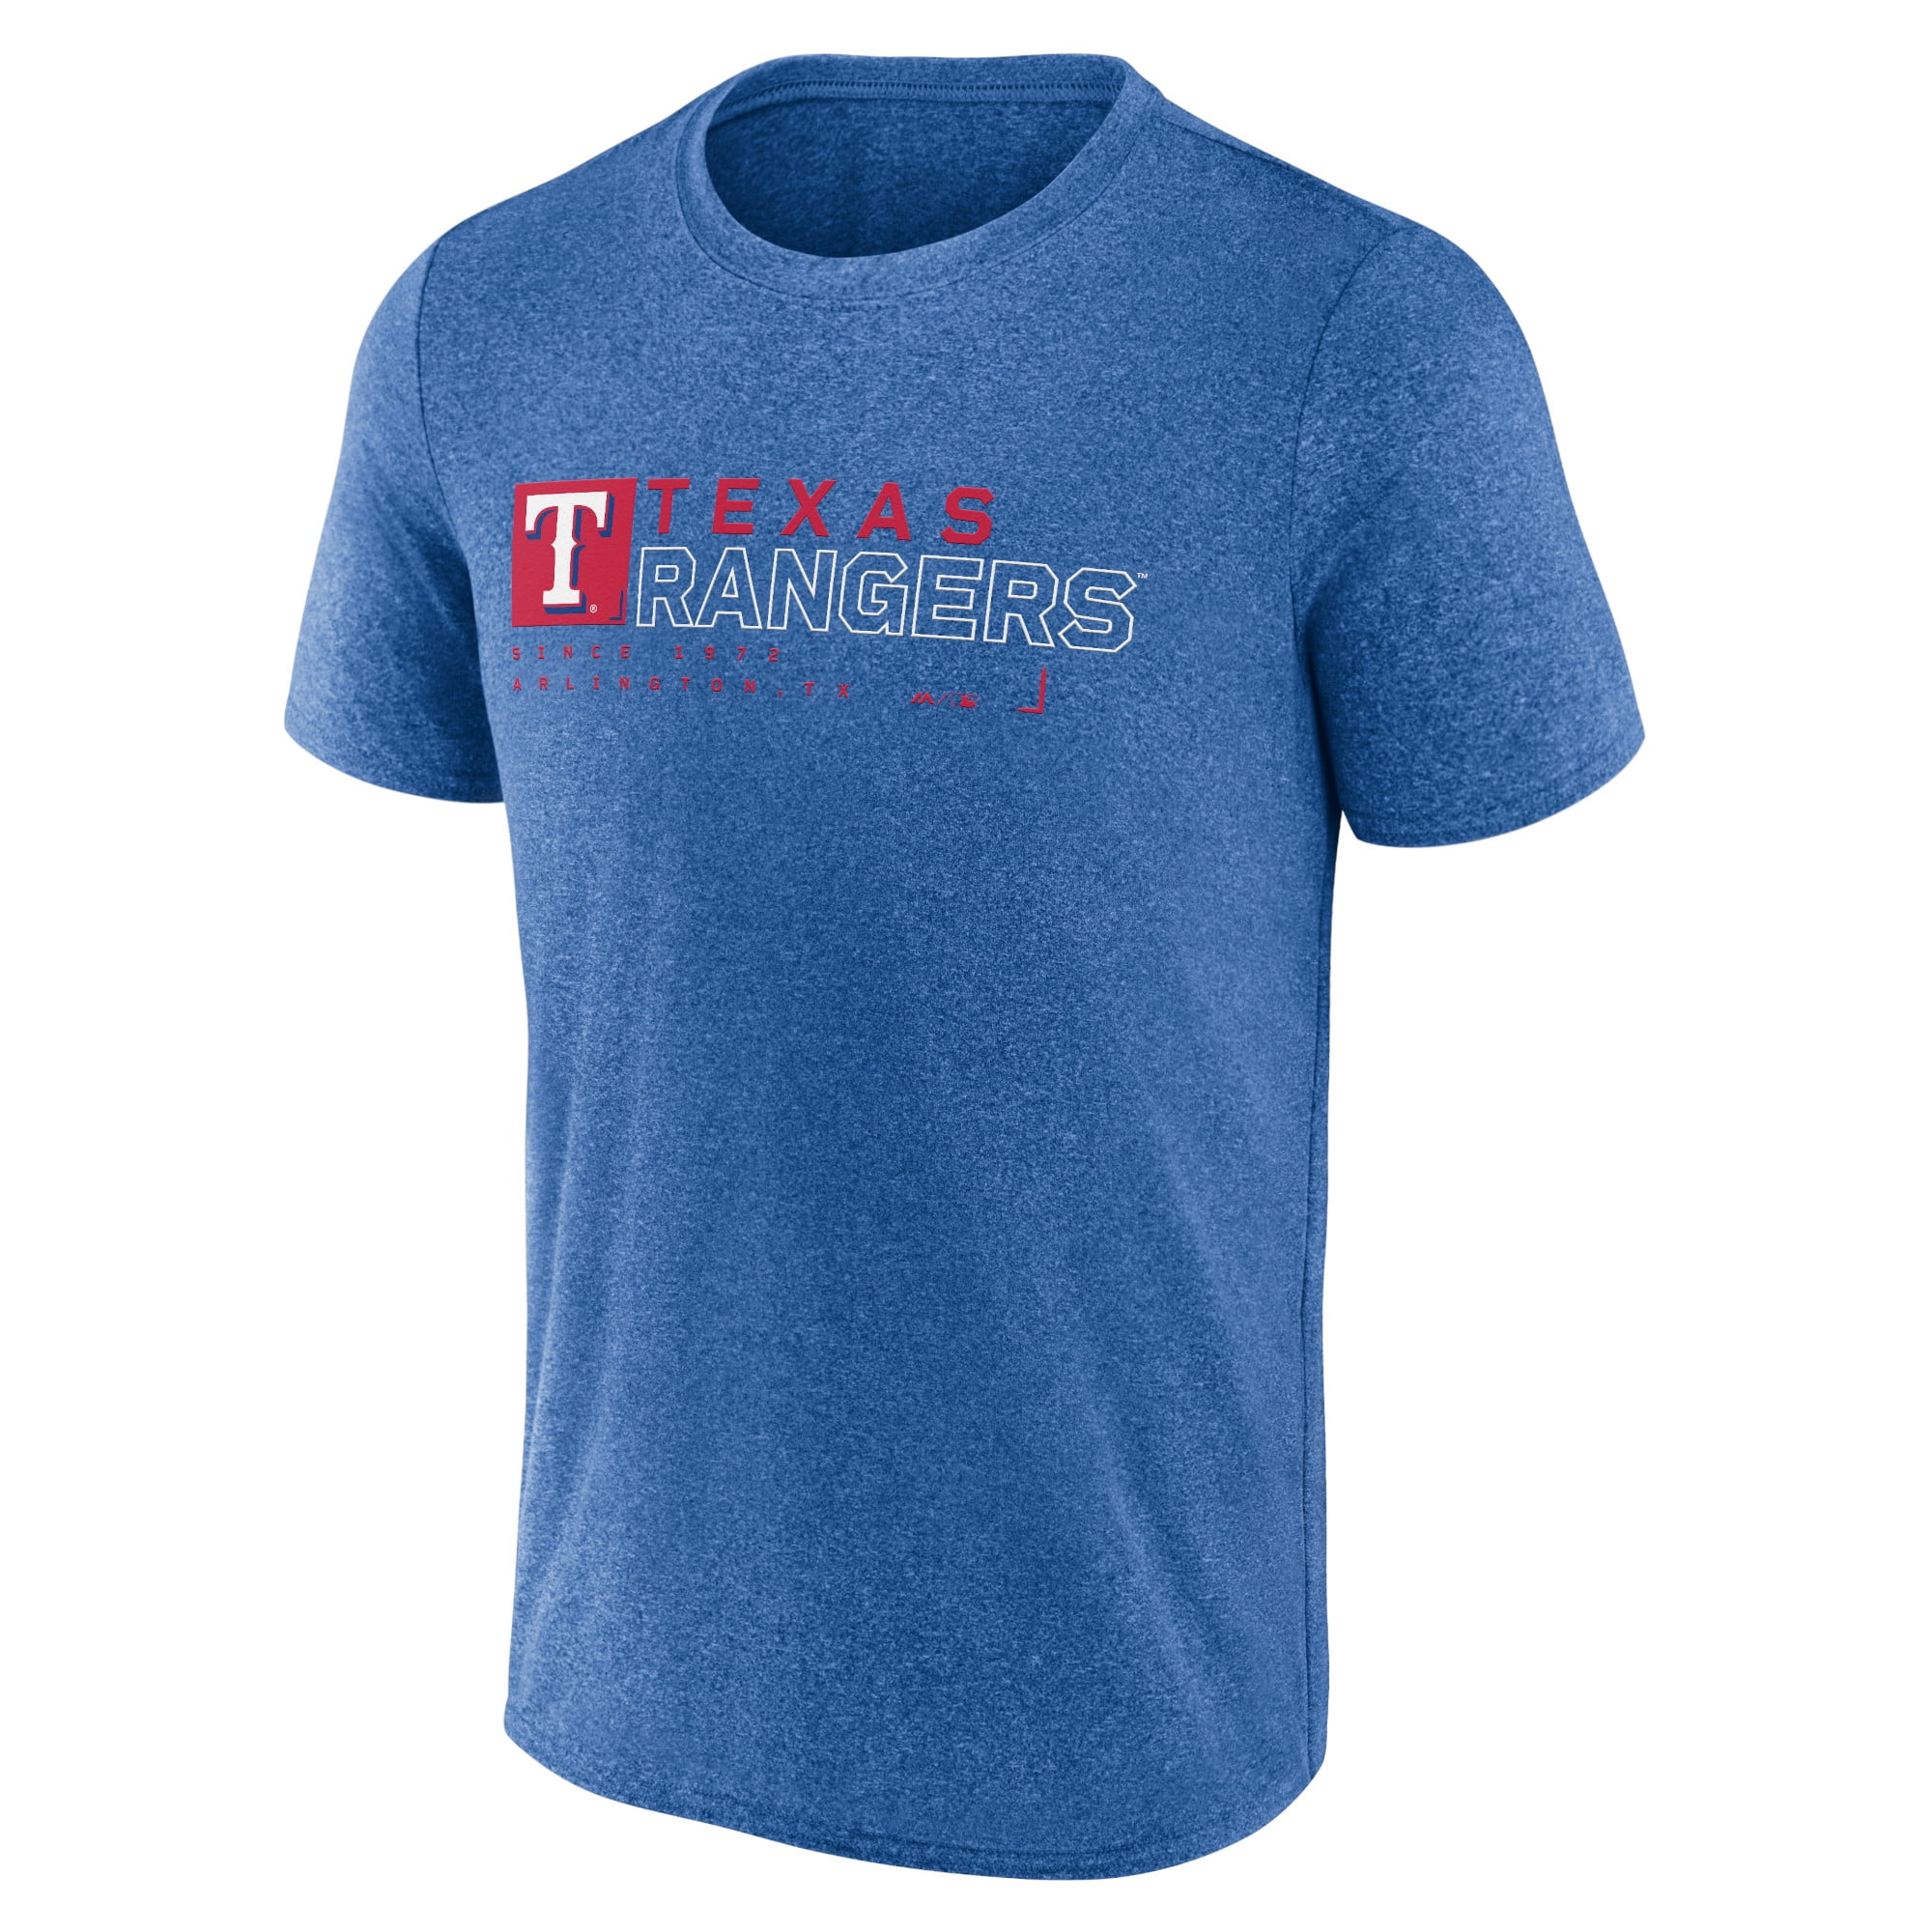 Texas Rangers T-shirts in Texas Rangers Team Shop - Walmart.com